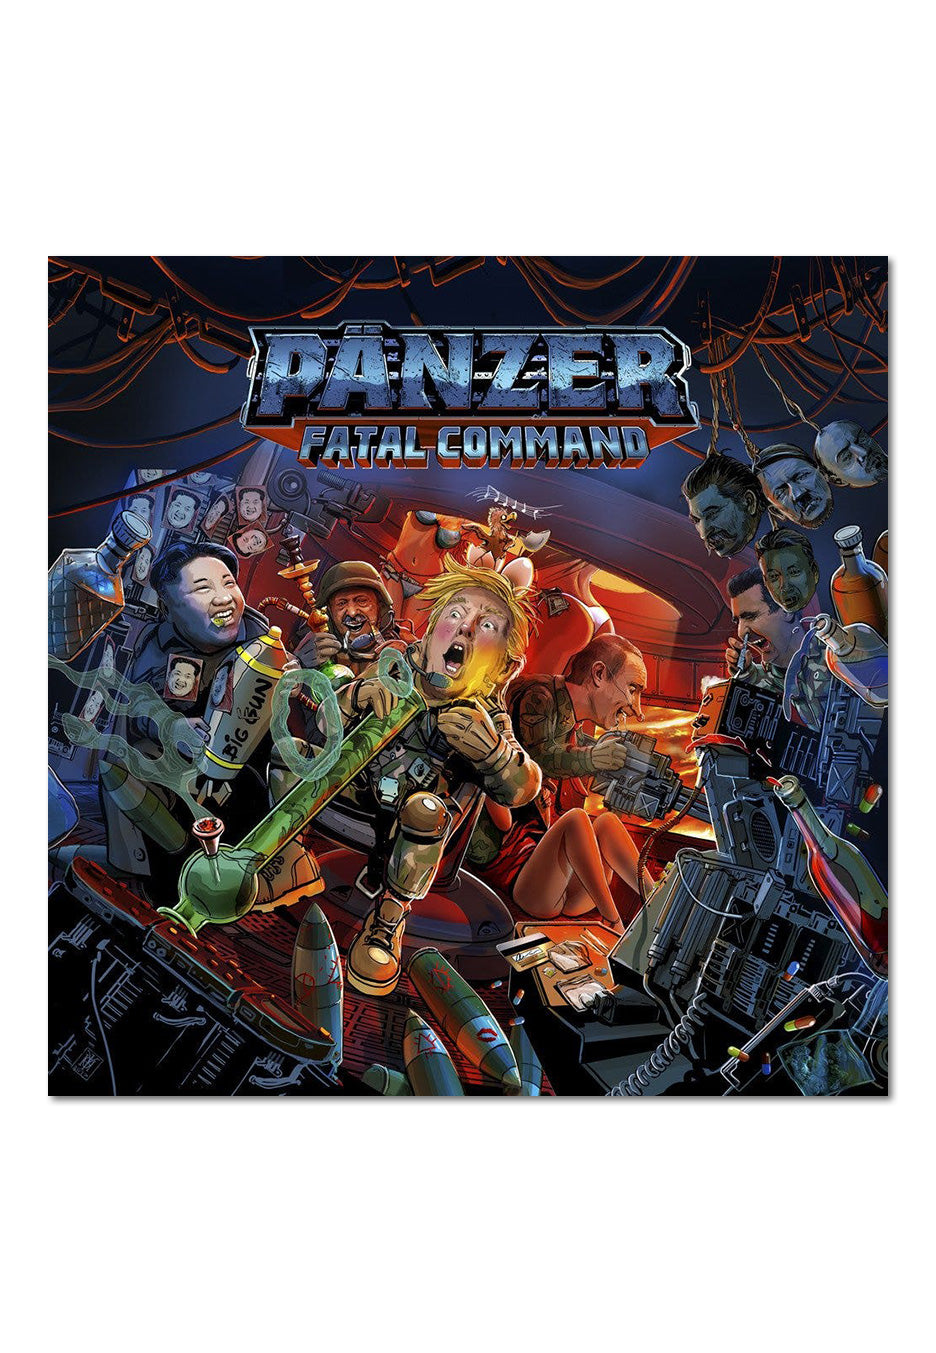 Pänzer - Fatal Command Digipak - Digipak CD